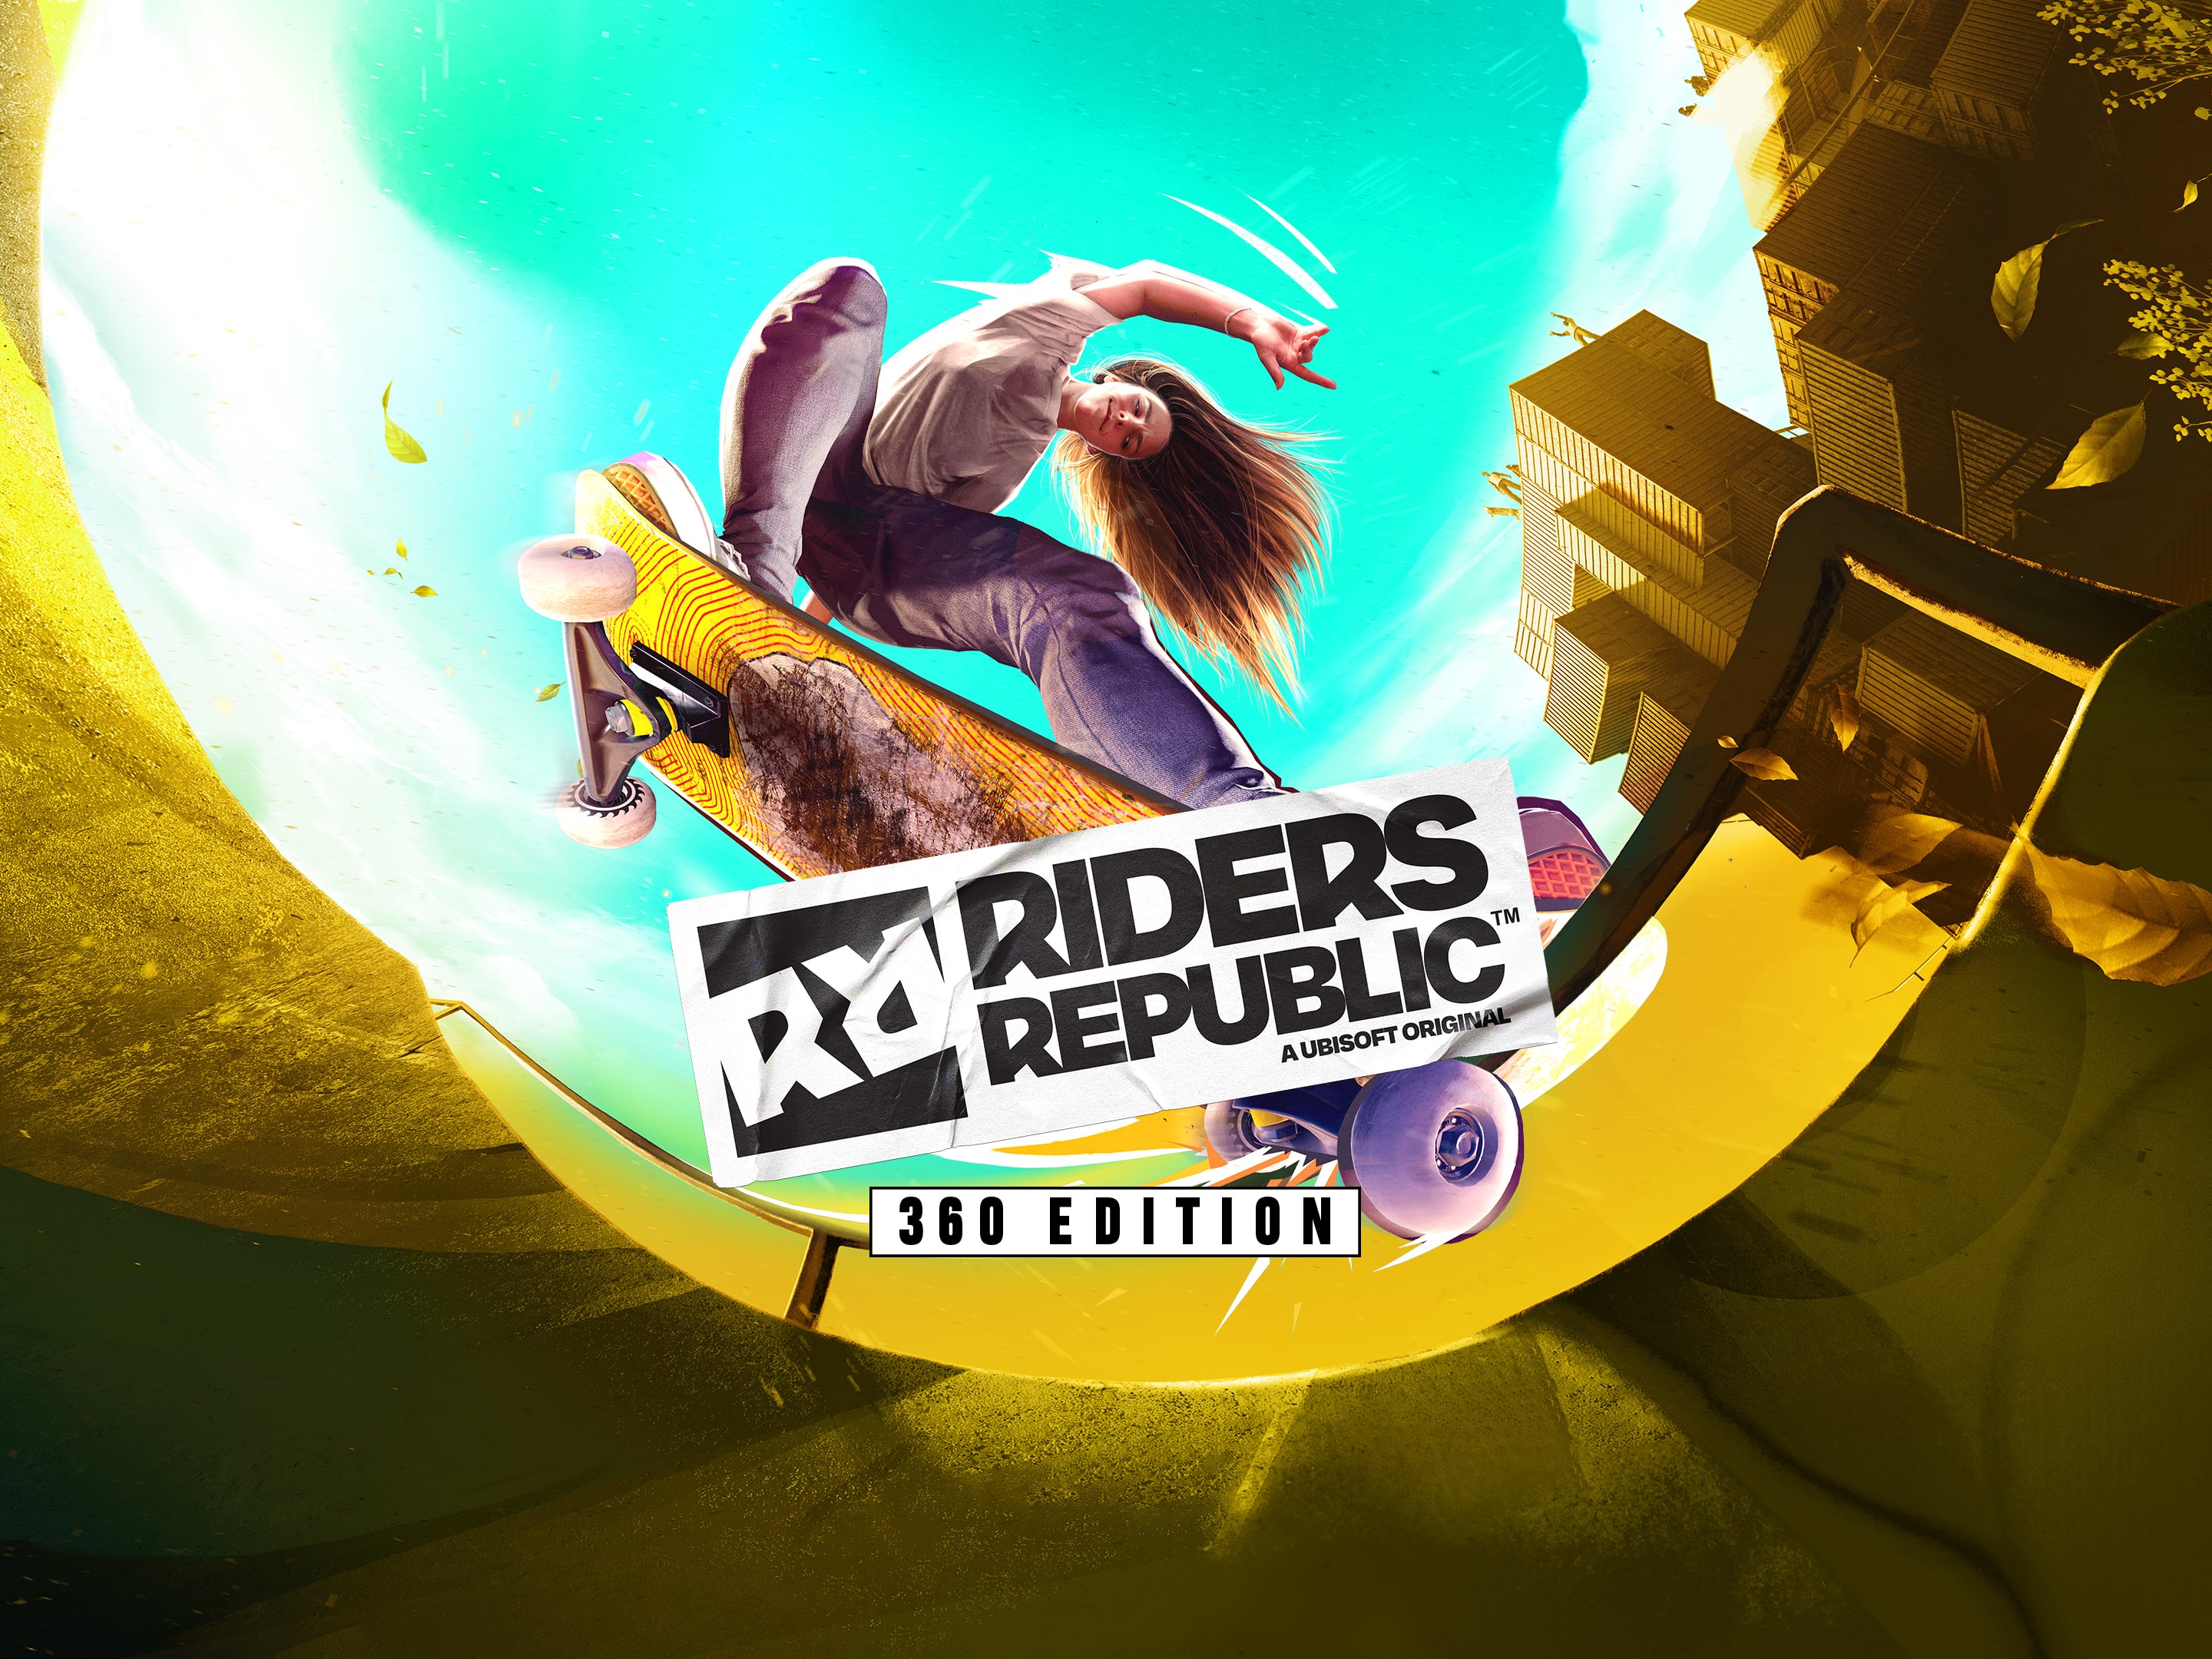 Riders PS4 PS5 & Republic™